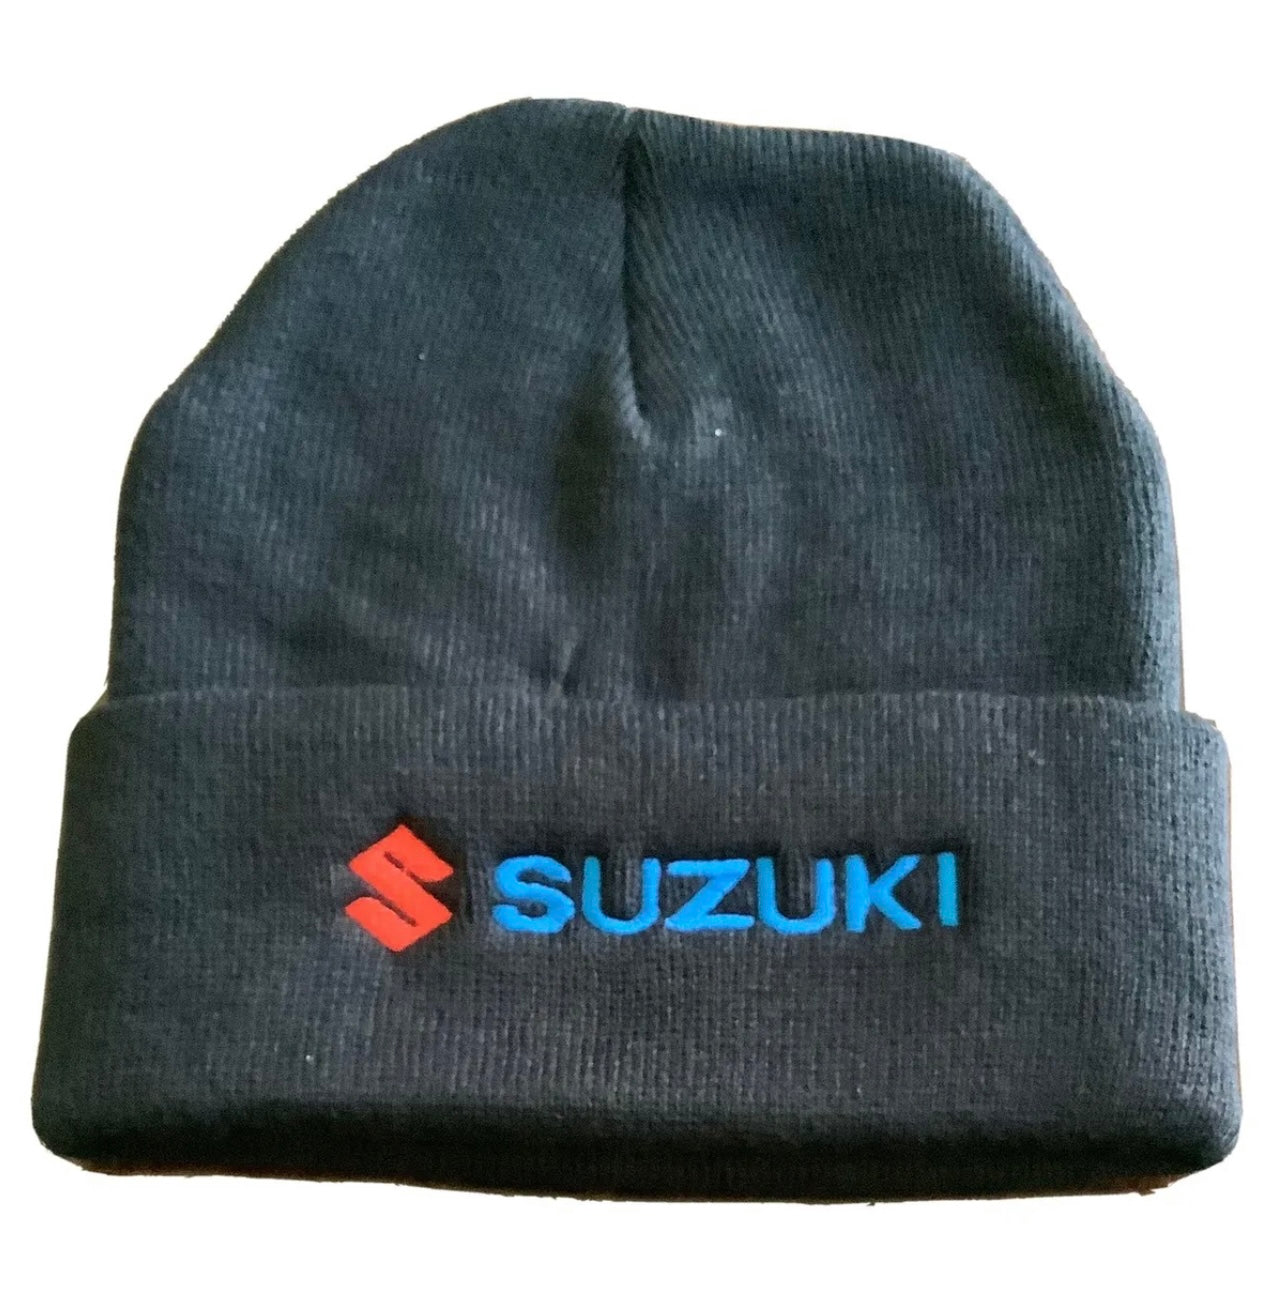 Suzuki Embroidered Beanie